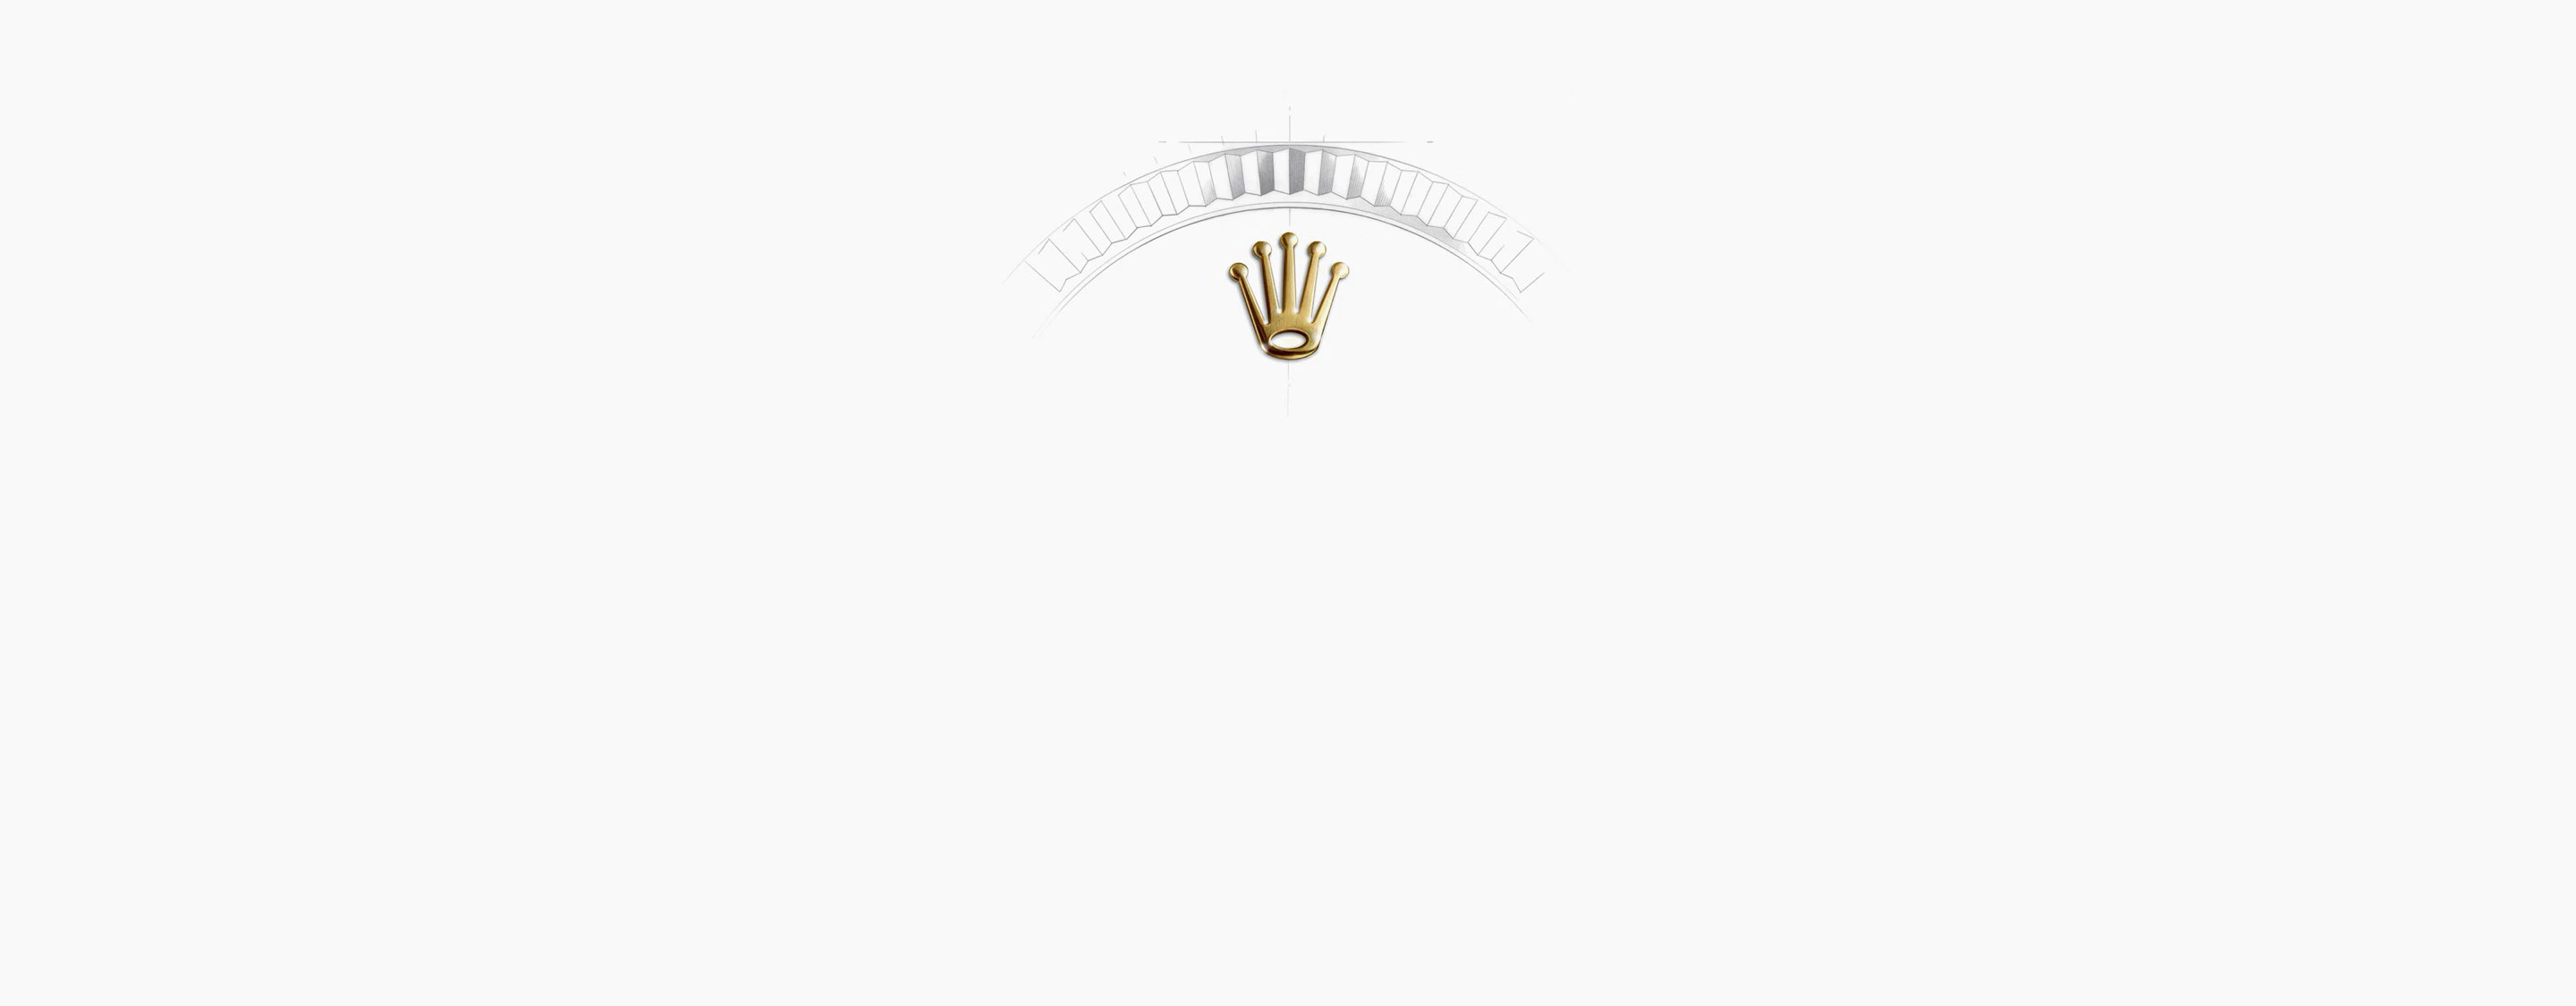 Corona Reloj Rolex Cosmograph Daytona oro amarillo en Relojería Alemana